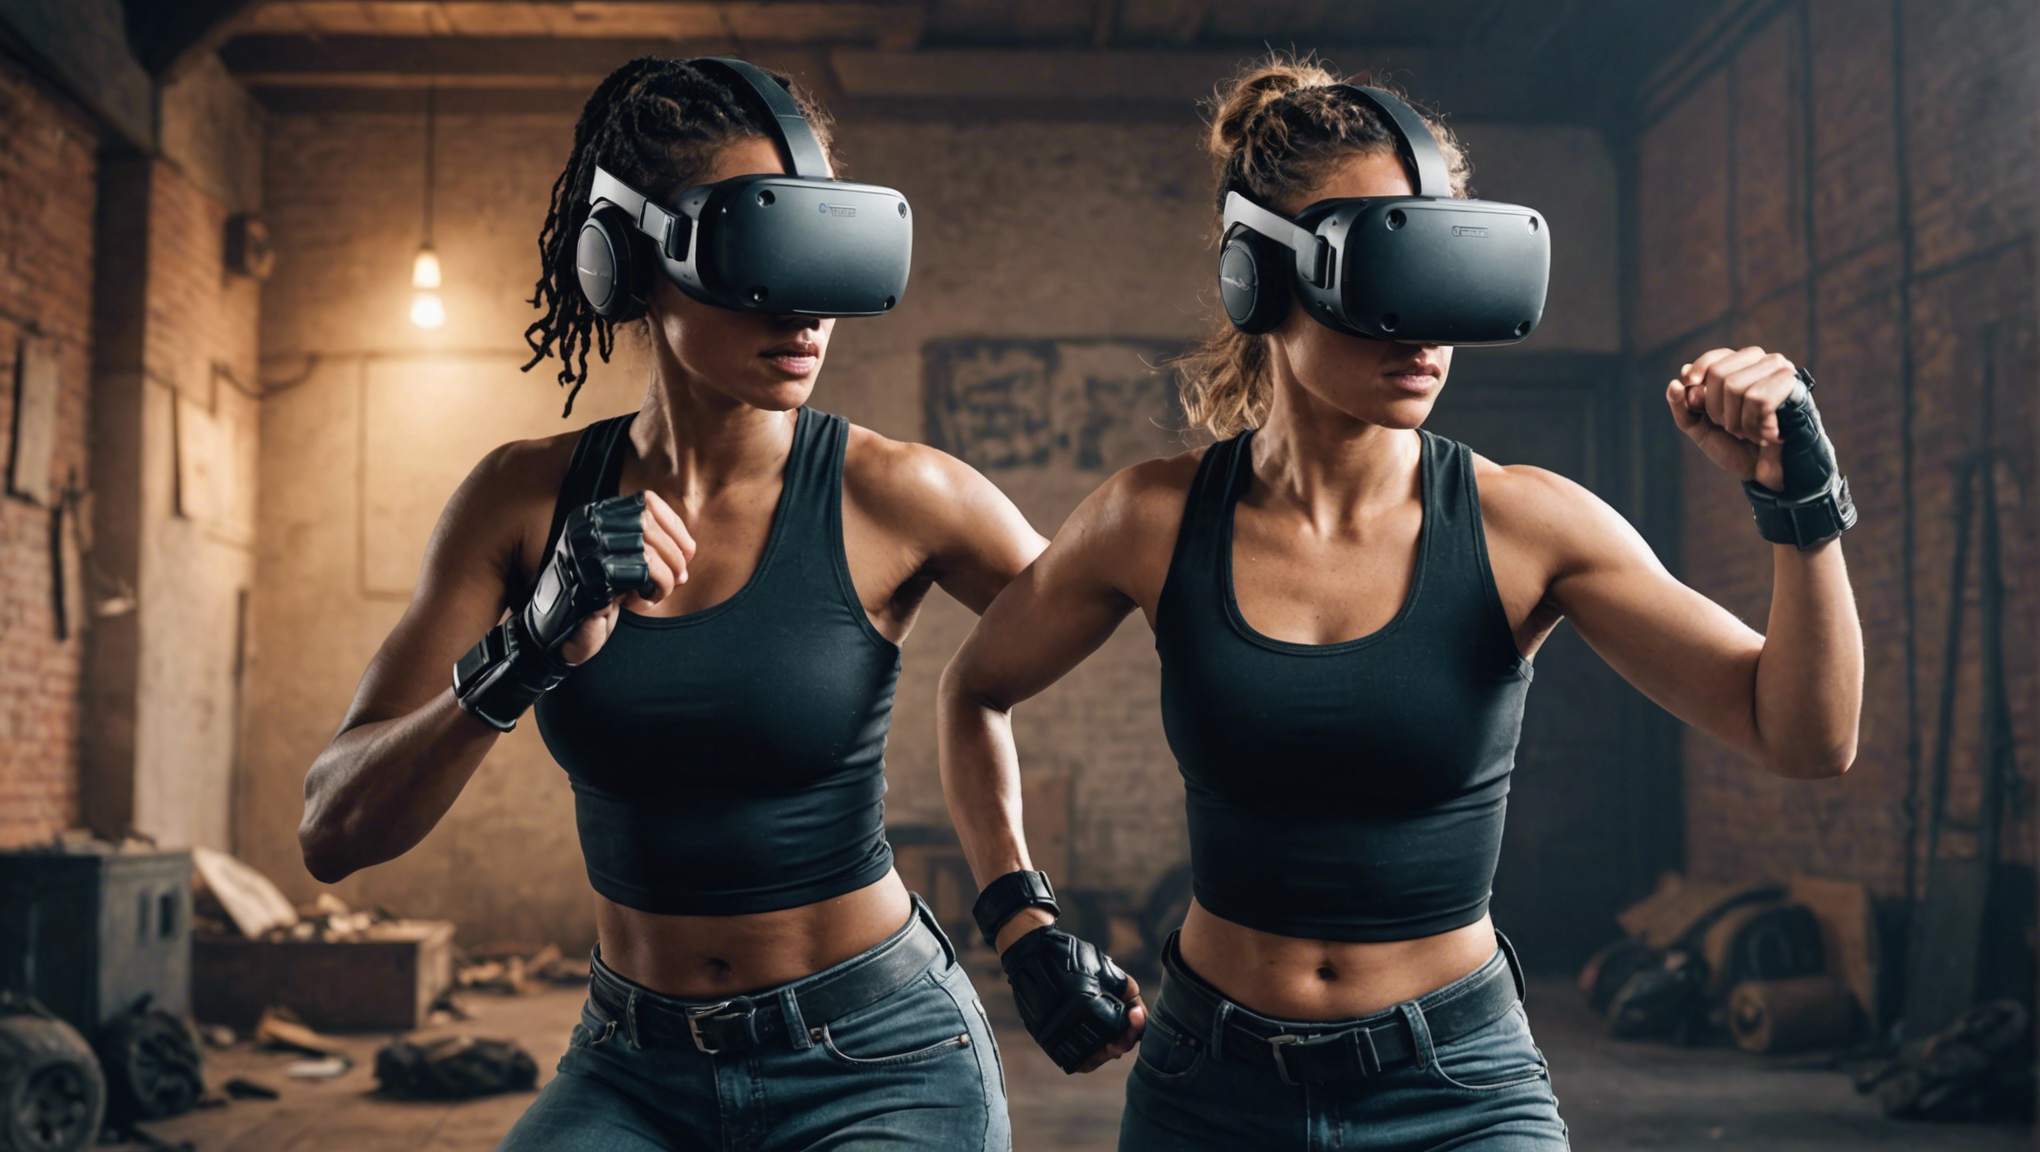 découvrez comment la réalité virtuelle peut révolutionner la lutte contre les violences faites aux femmes avec l'expérience immersive de fight back !